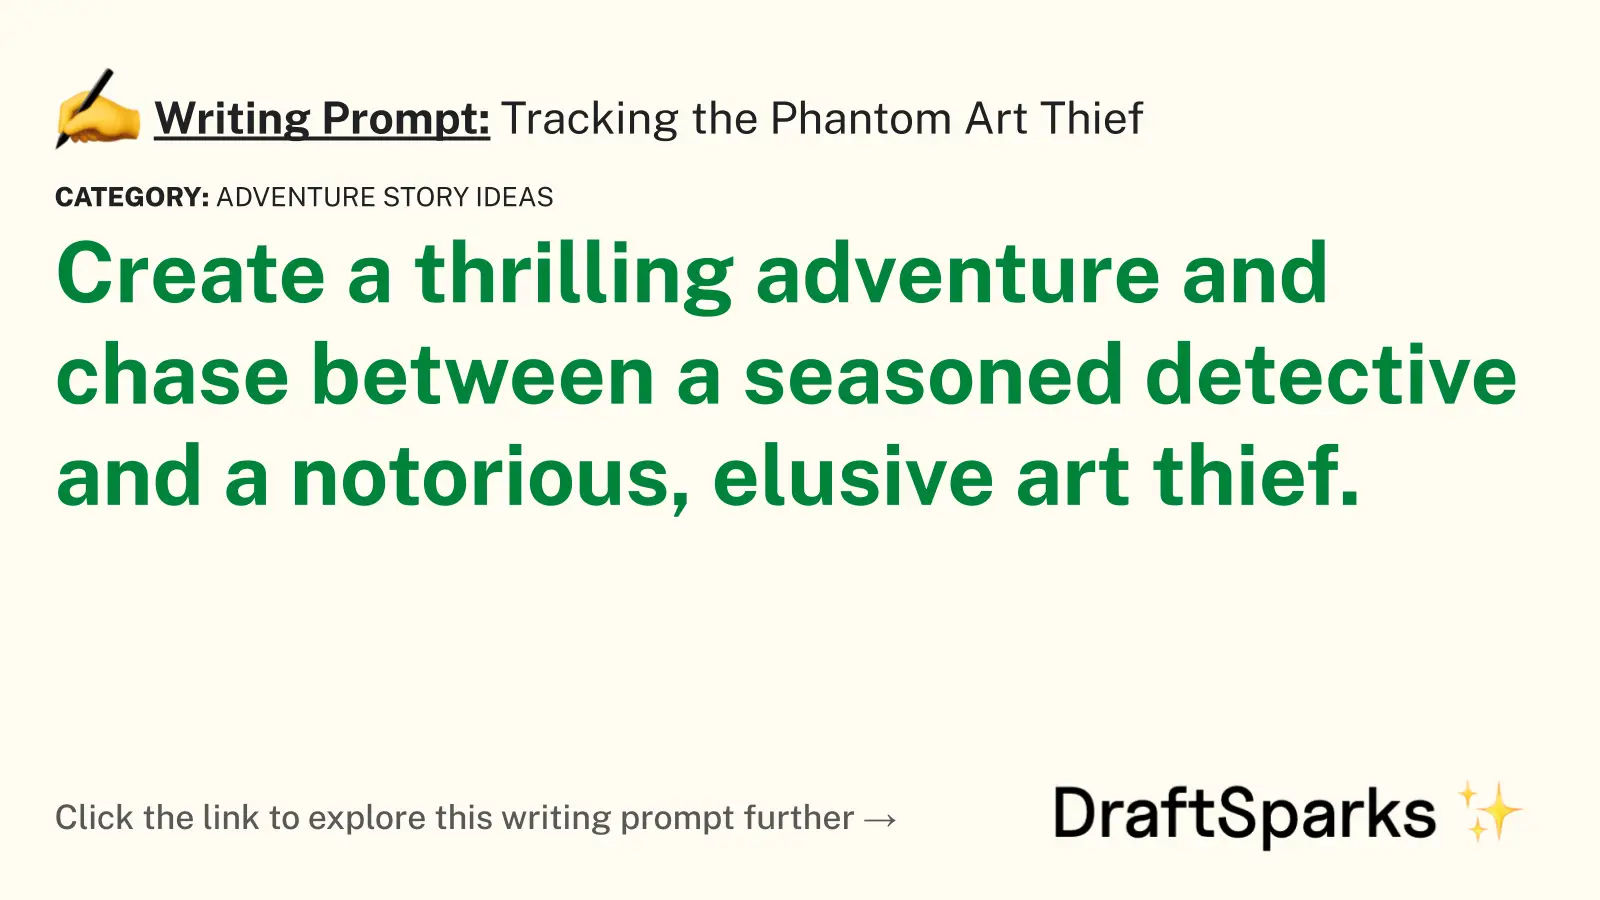 Tracking the Phantom Art Thief